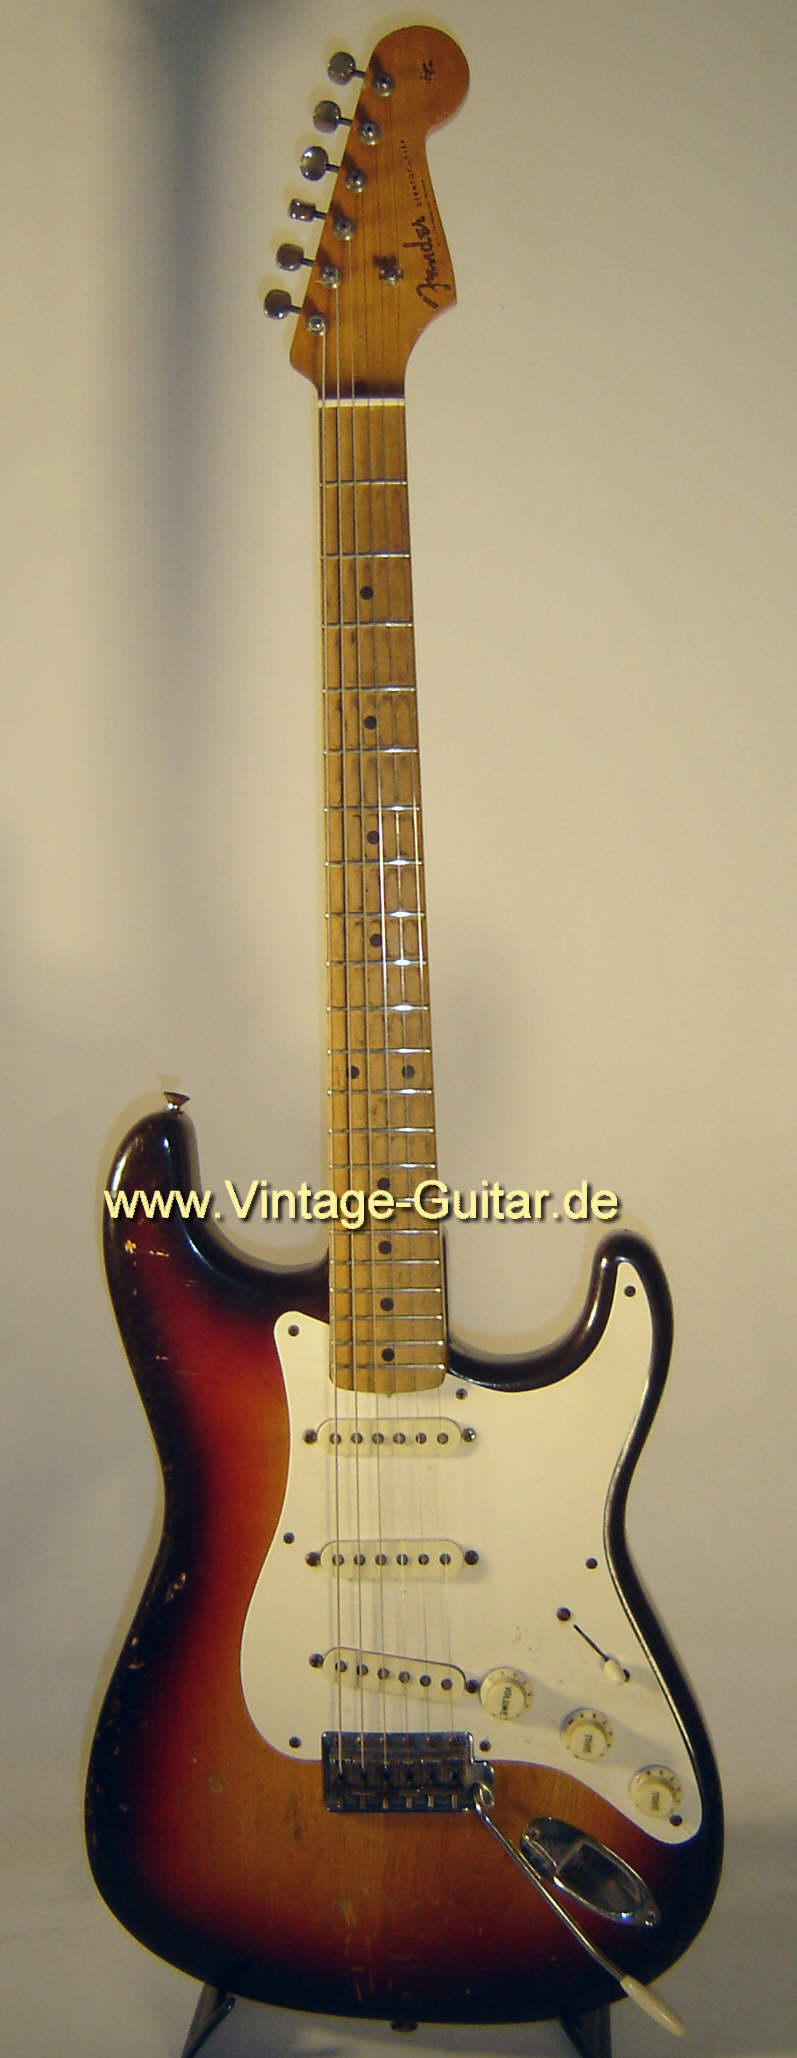 Fender_Stratocaster_1958_sb_front.jpg